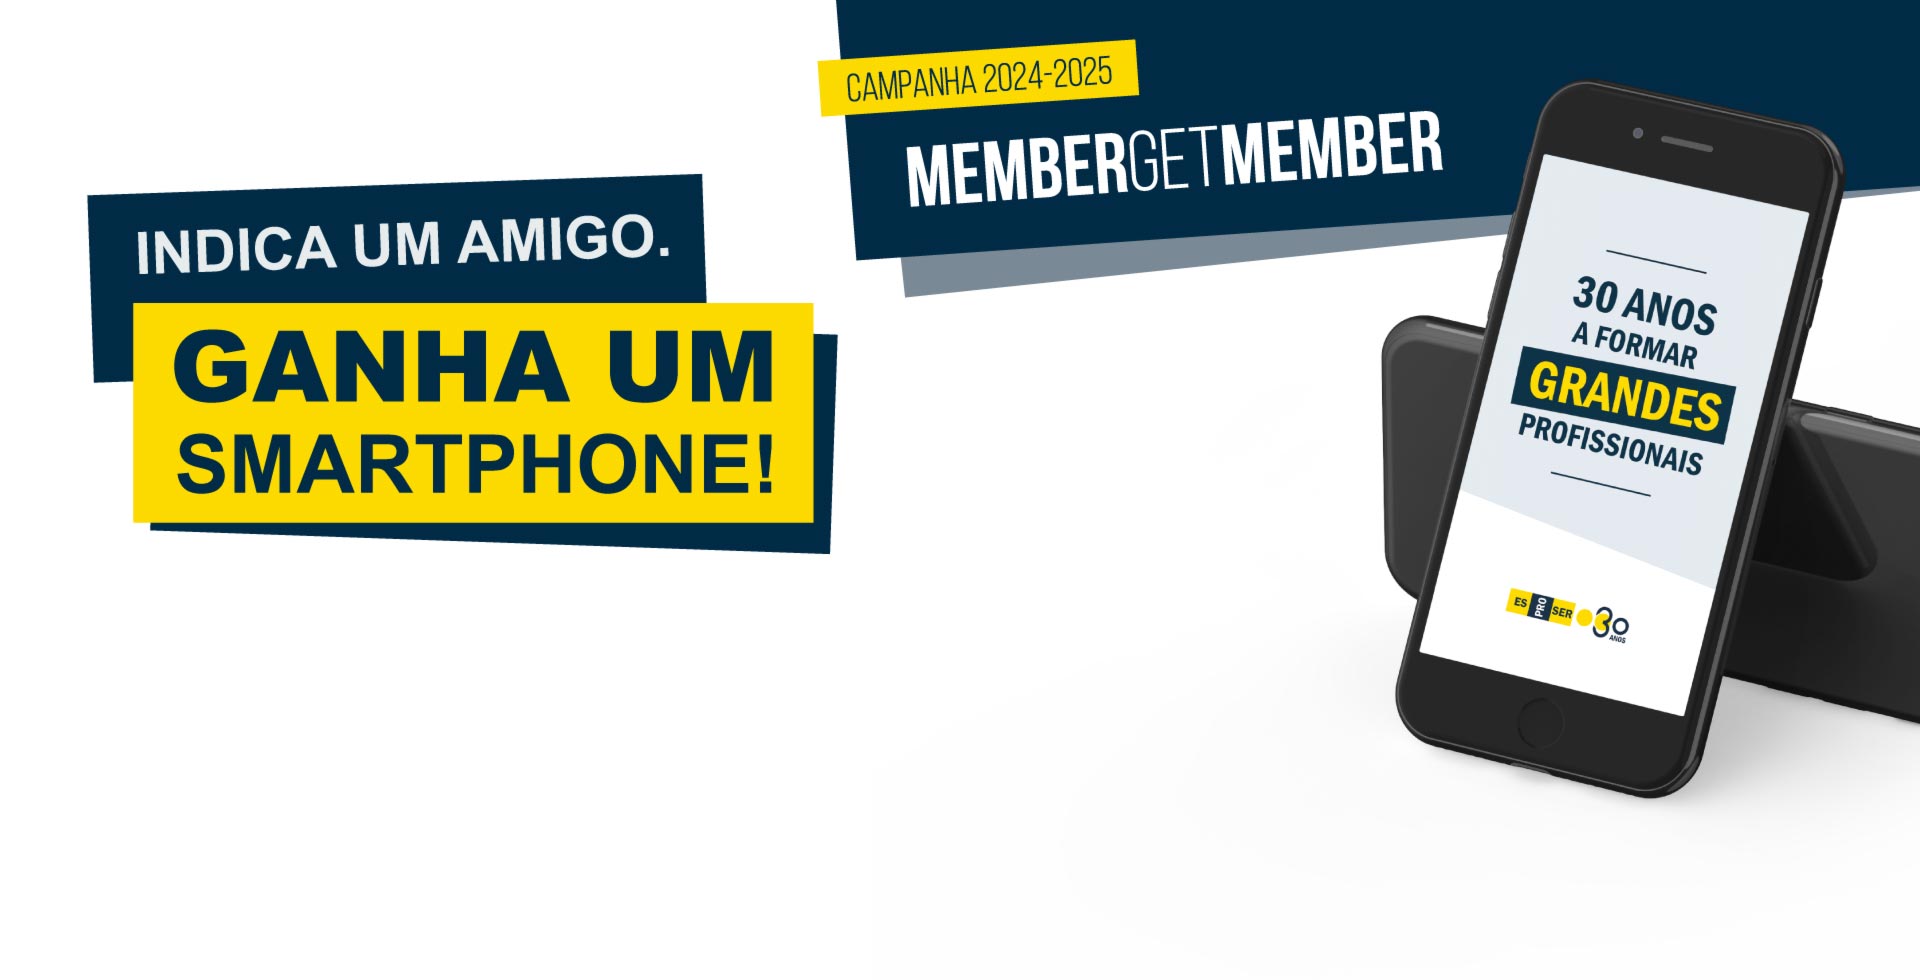 Campanha Member Get Member 2024-2025